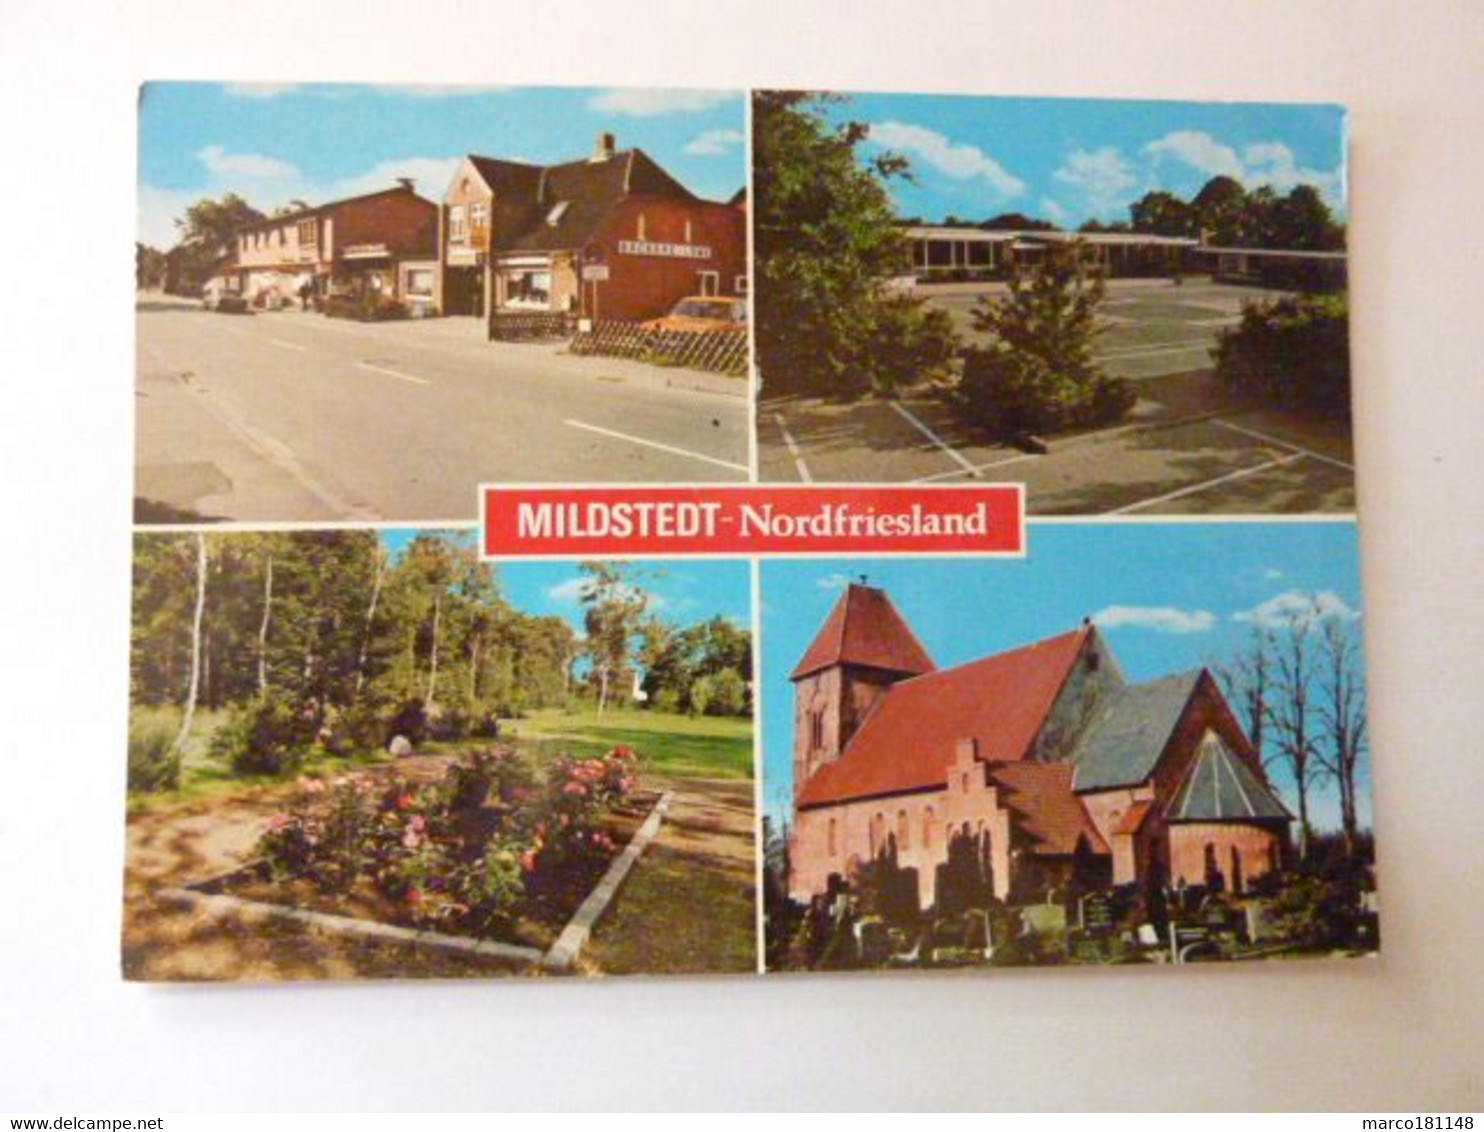 MILDSTEDT - Nordfriesland - Nordfriesland